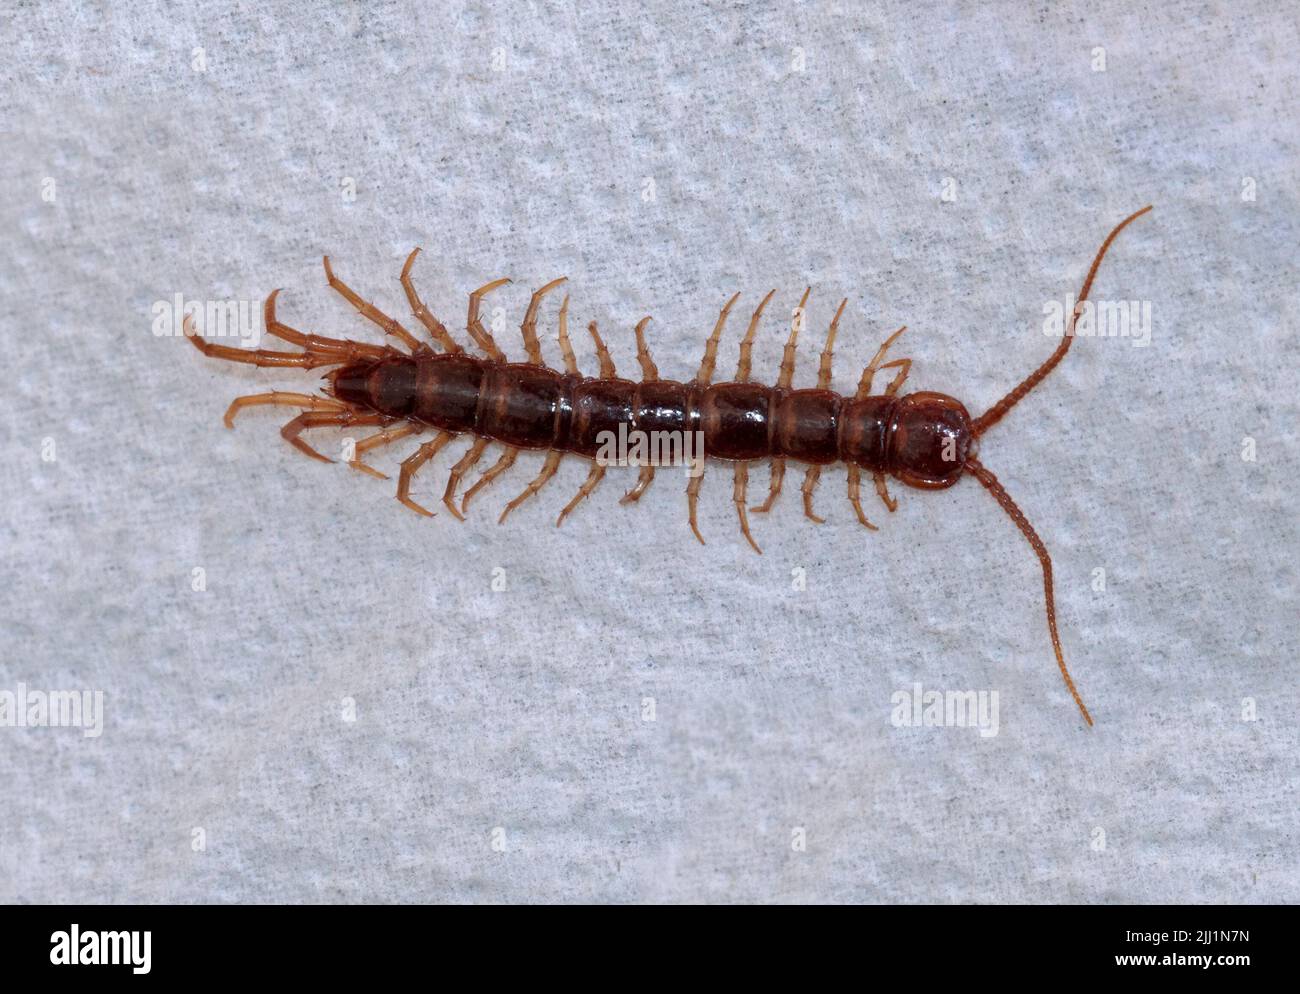 Centipede (lithobius forficatus) Stock Photo